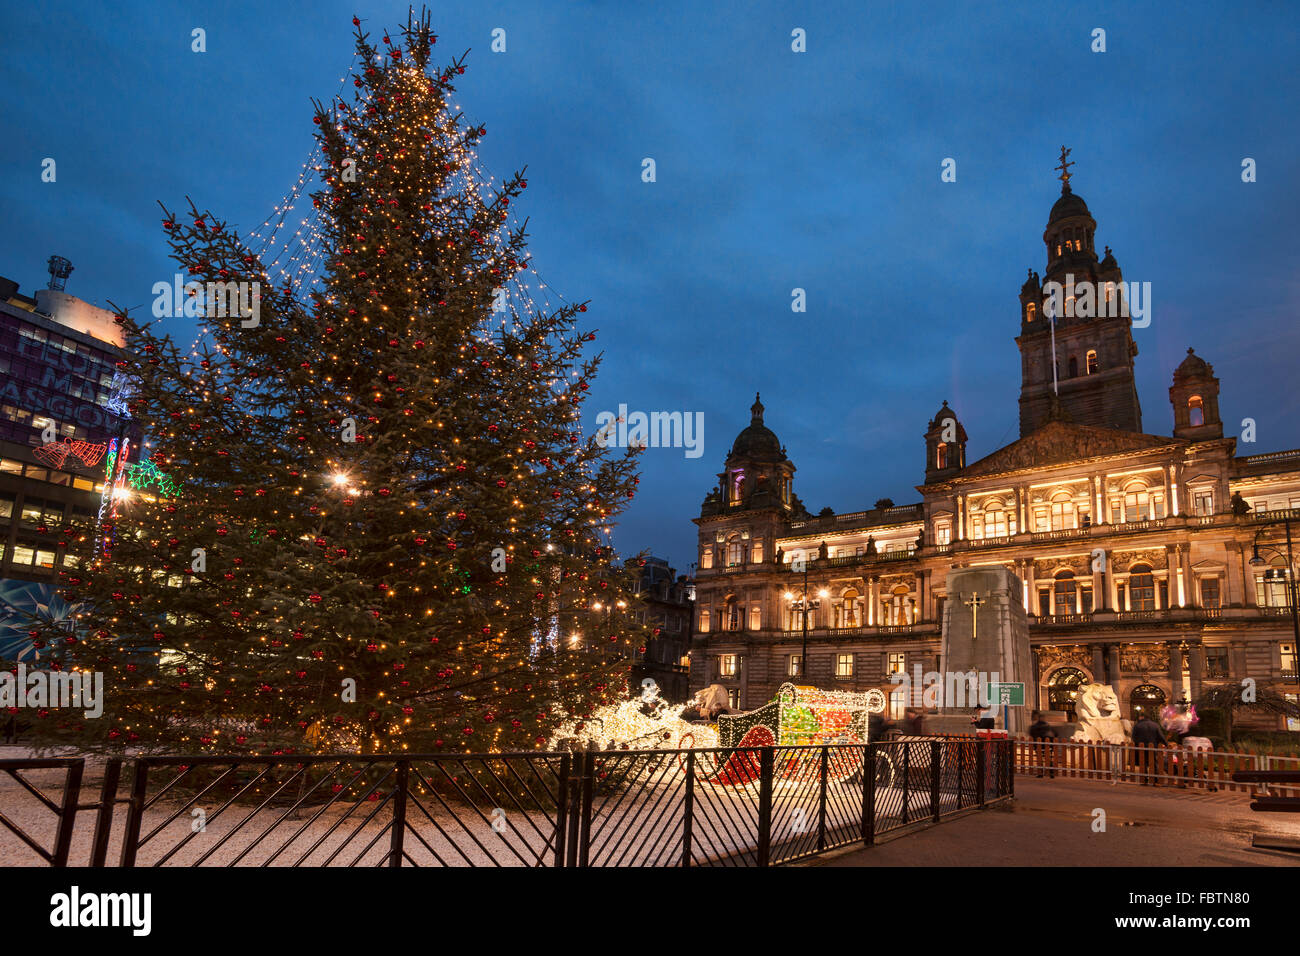 George Square, Glasgow City Chambers, lumières de Noël, Soirée, Ecosse, Royaume-Uni Banque D'Images